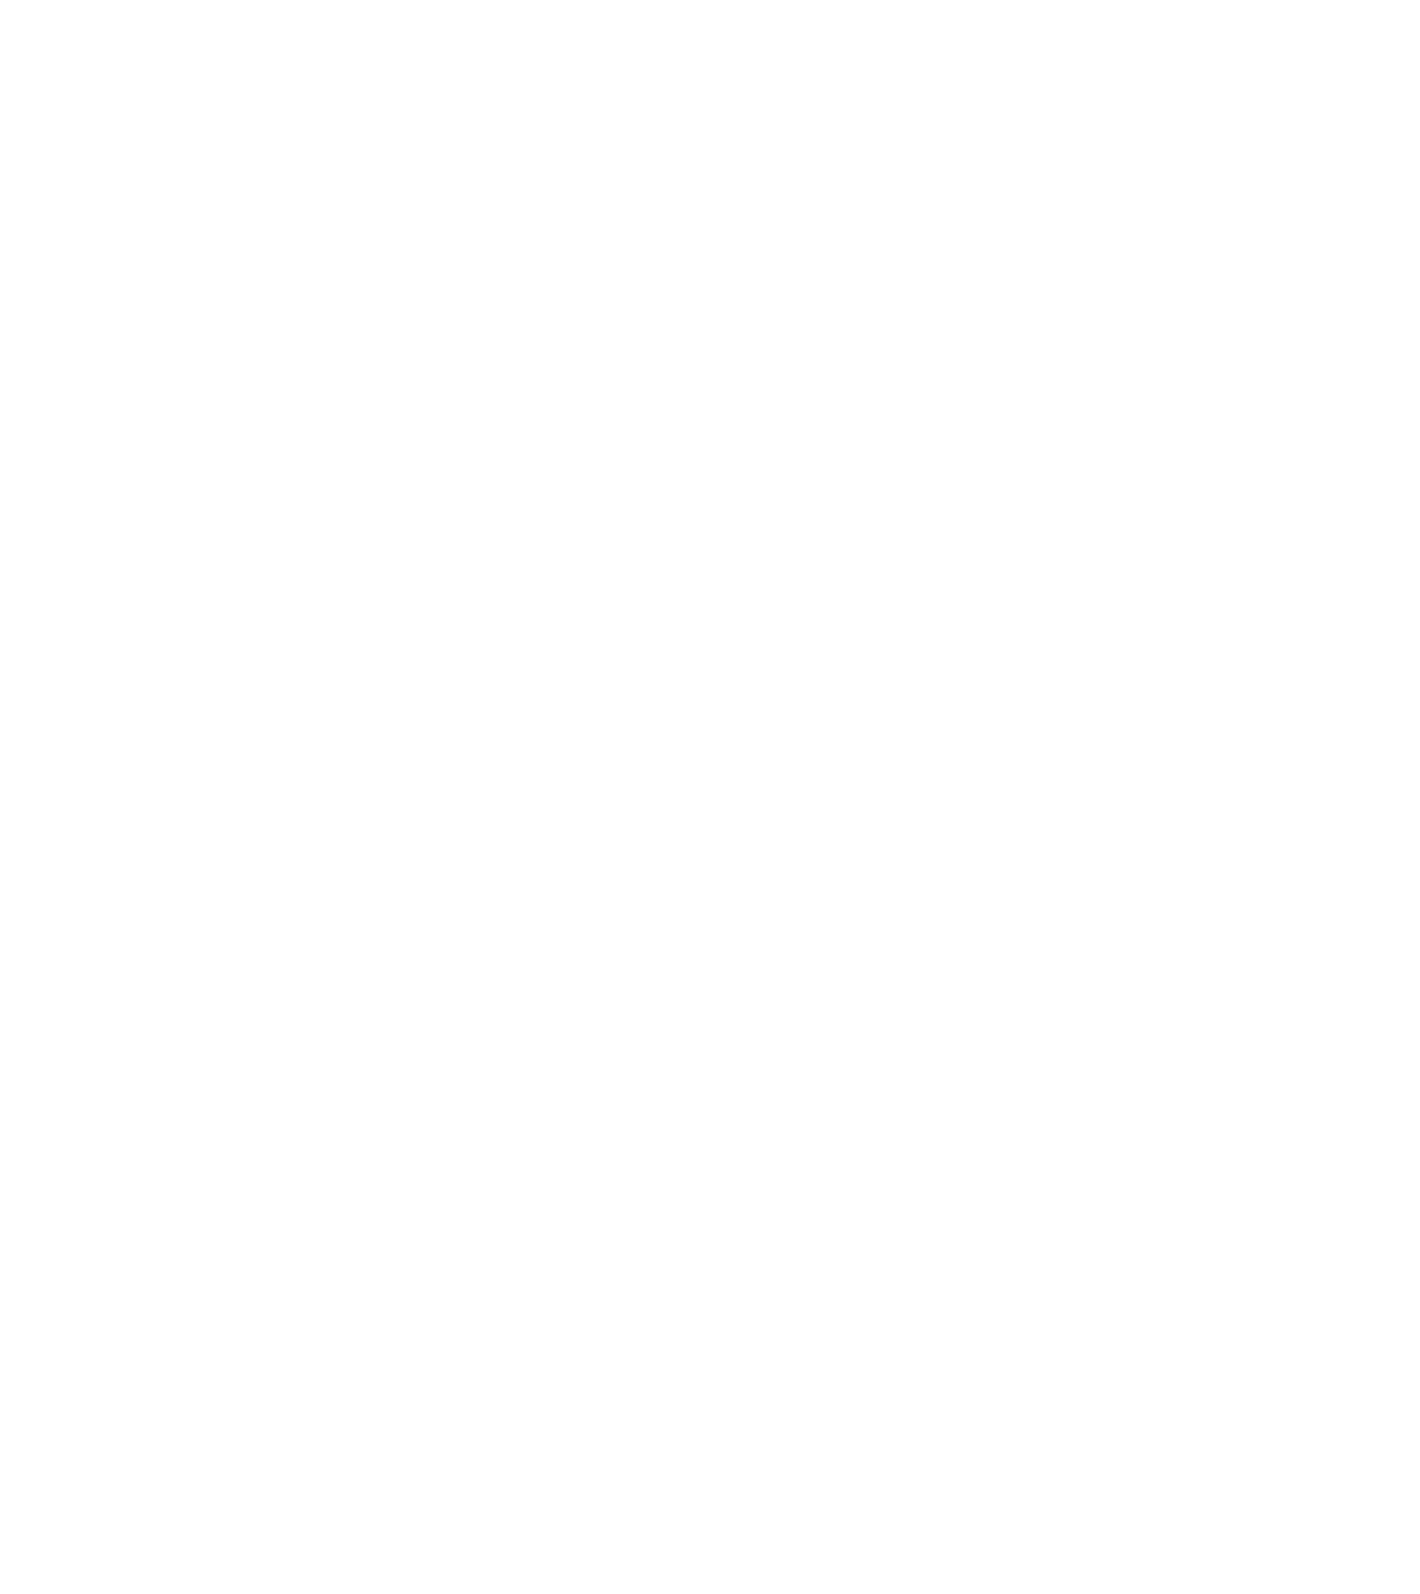 Sri Trang Gloves logo for dark backgrounds (transparent PNG)